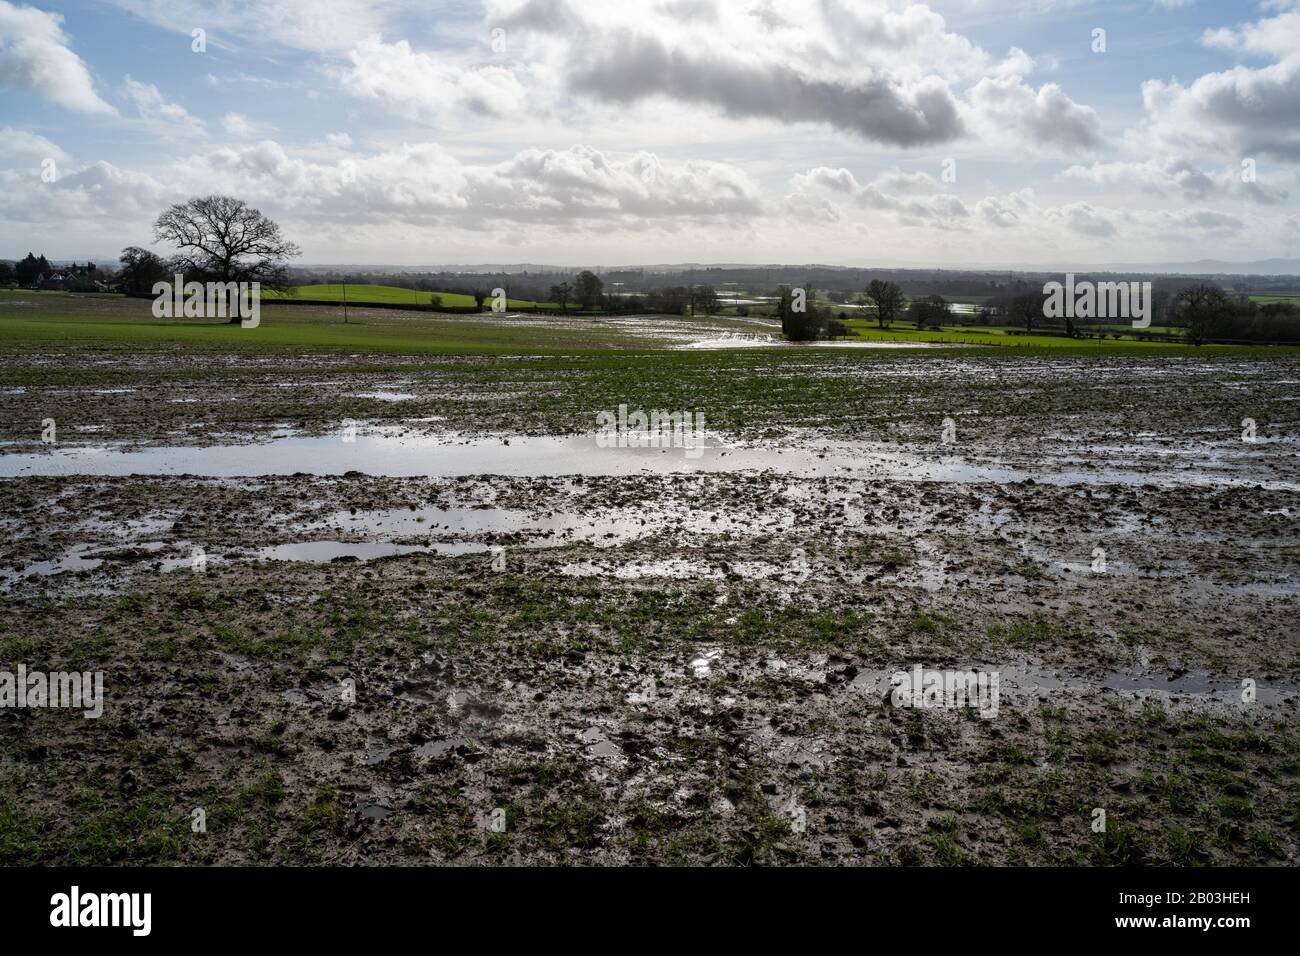 En regardant sur les champs inondés et inondés de Shropshire après la tempête Dennis. Boue et piscines d'eau à proximité de la caméra et de l'eau de crue au-delà. Banque D'Images